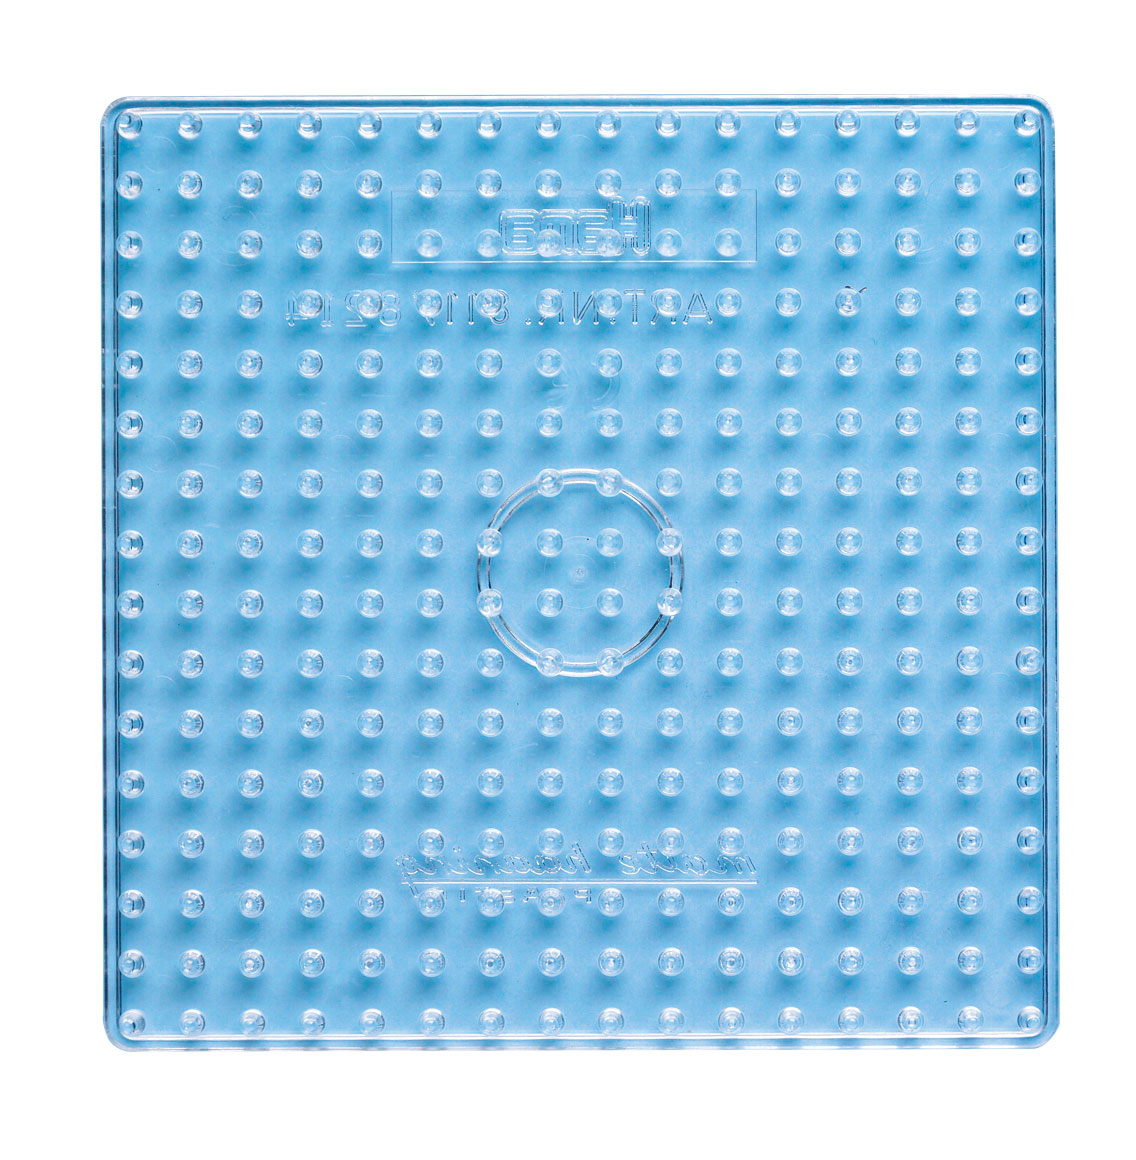 Hama Bügelperlen Steckplatte - Maxi quadratisch